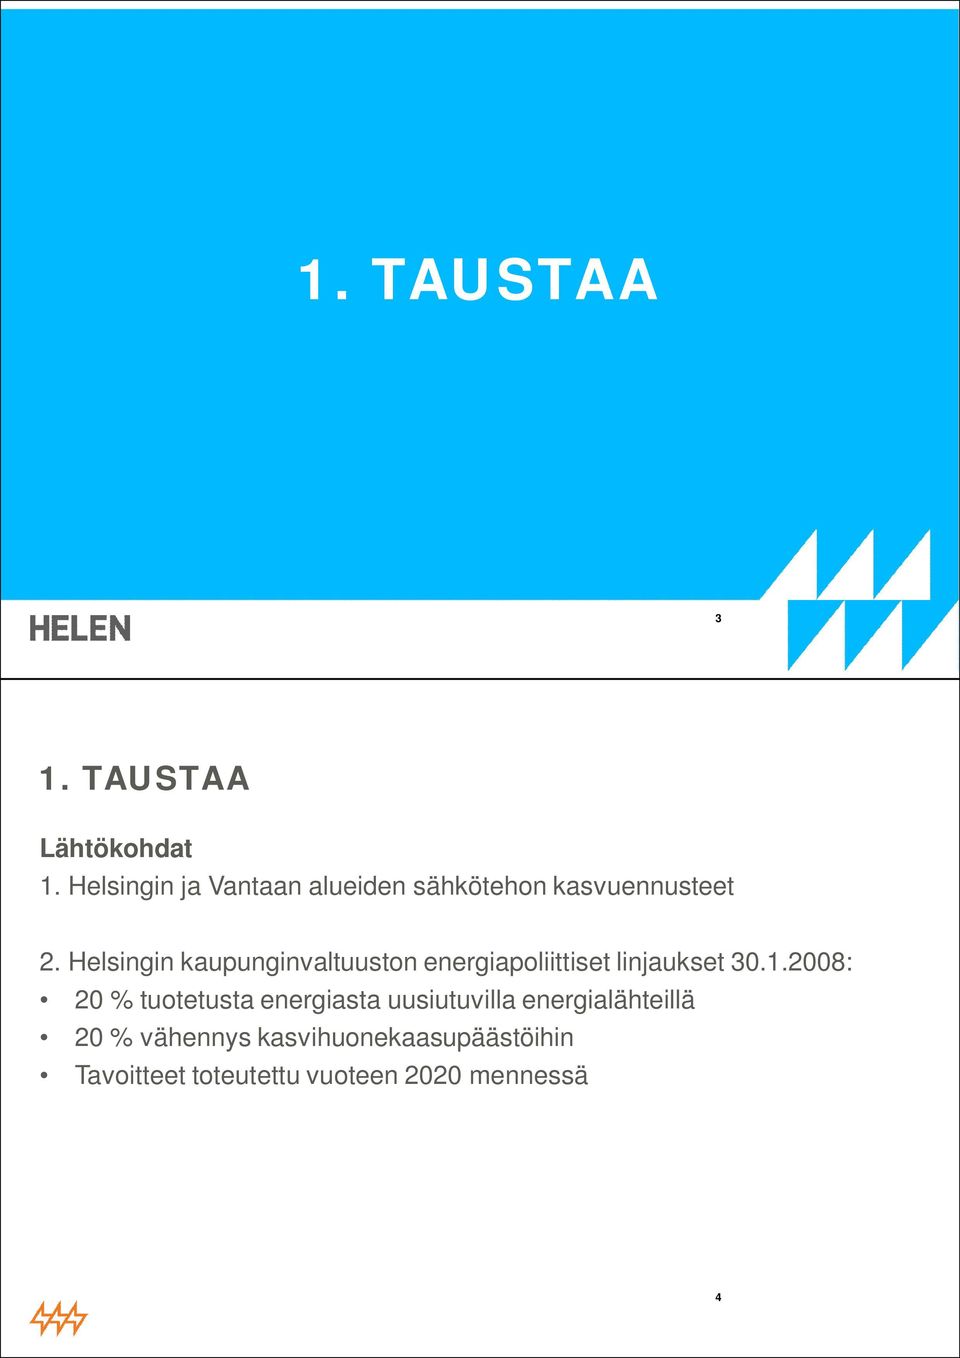 Helsingin kaupunginvaltuuston energiapoliittiset linjaukset 30.1.